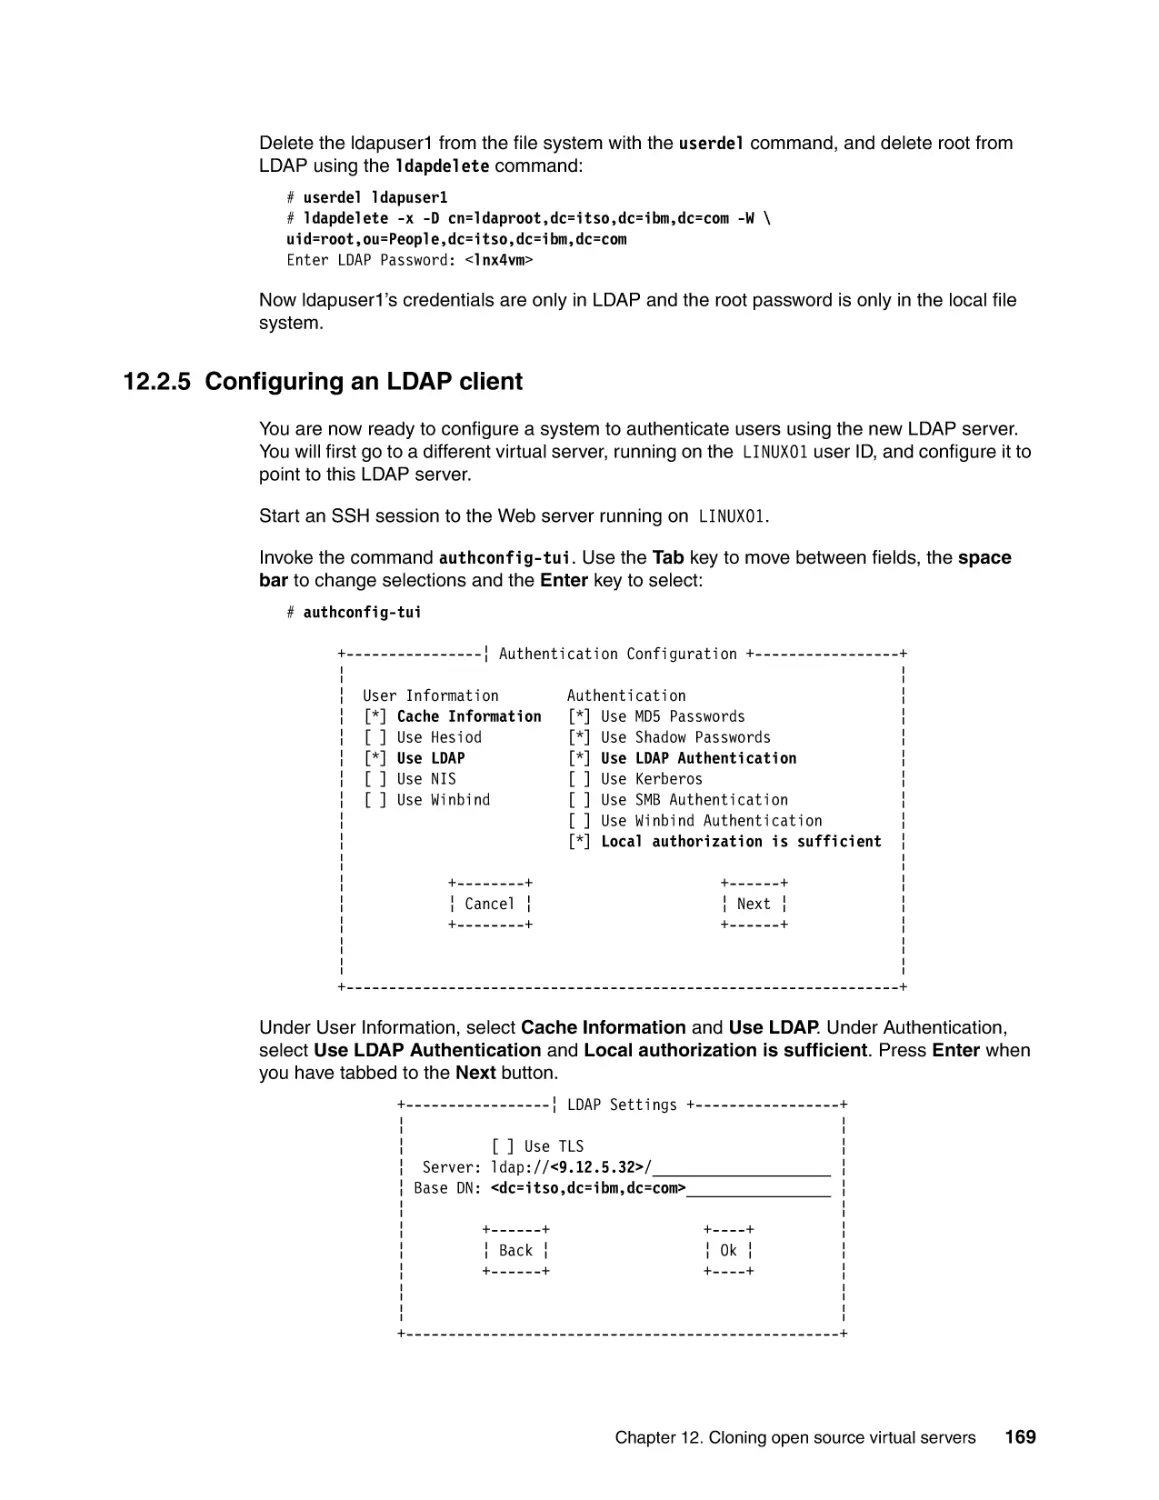 12.2.5 Configuring an LDAP client